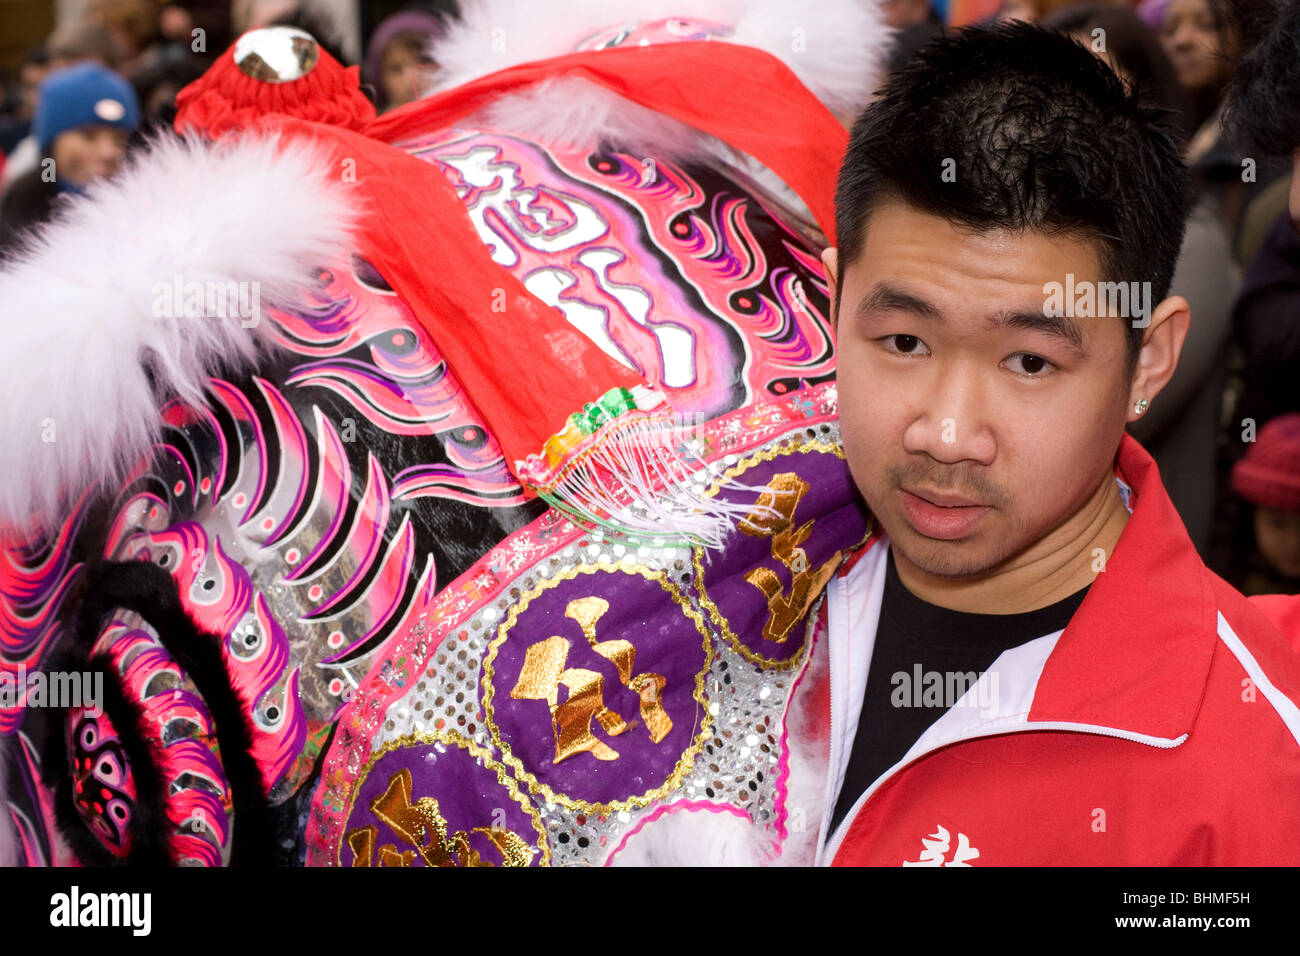 Chinese New Year celebrations , Year of the Tiger, Soho, London, UK Stock Photo